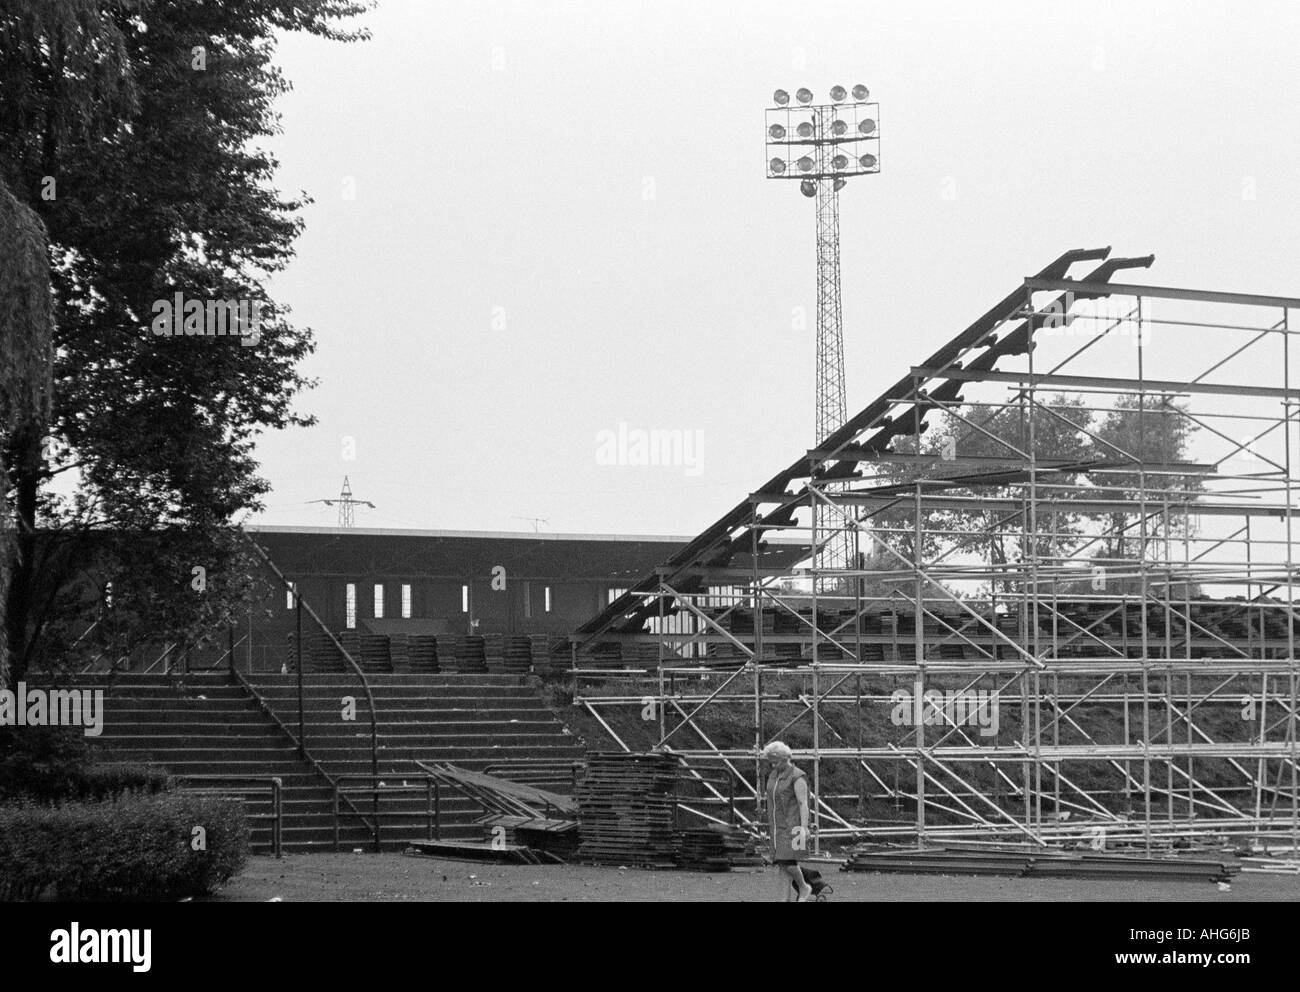 Fußball, Bundesliga, 1969/1970, Glueckaufkampfbahn Stadion in Gelsenkirchen, Stadion des FC Schalke 04, zusätzliche Stand Sitze Stockfoto